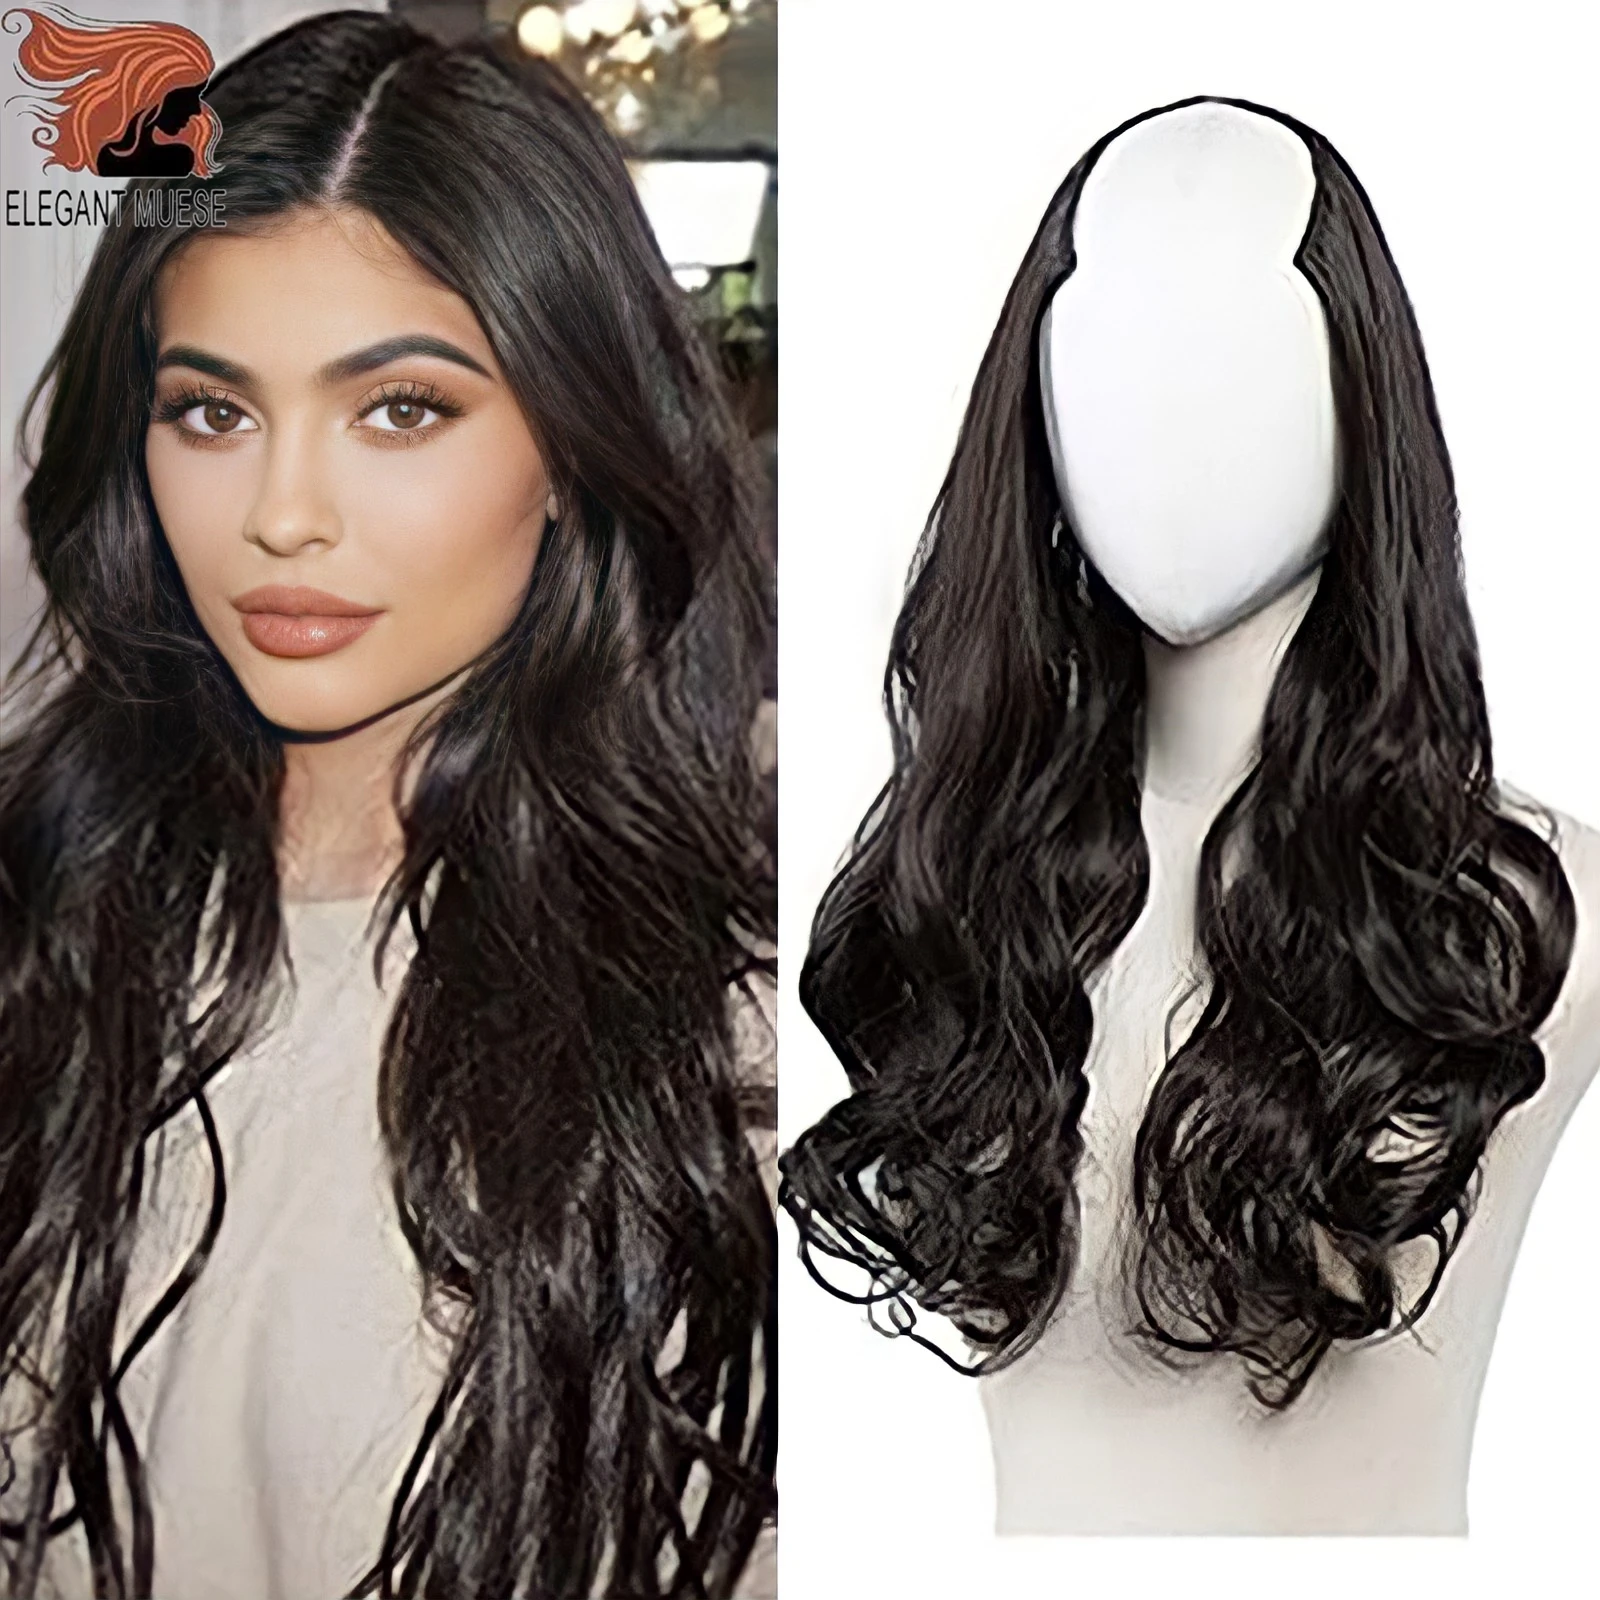 Peluca de cabello sintético para mujer, pelo largo ondulado en forma de U de 24 pulgadas, largo, Natural, negro y marrón, resistente al calor